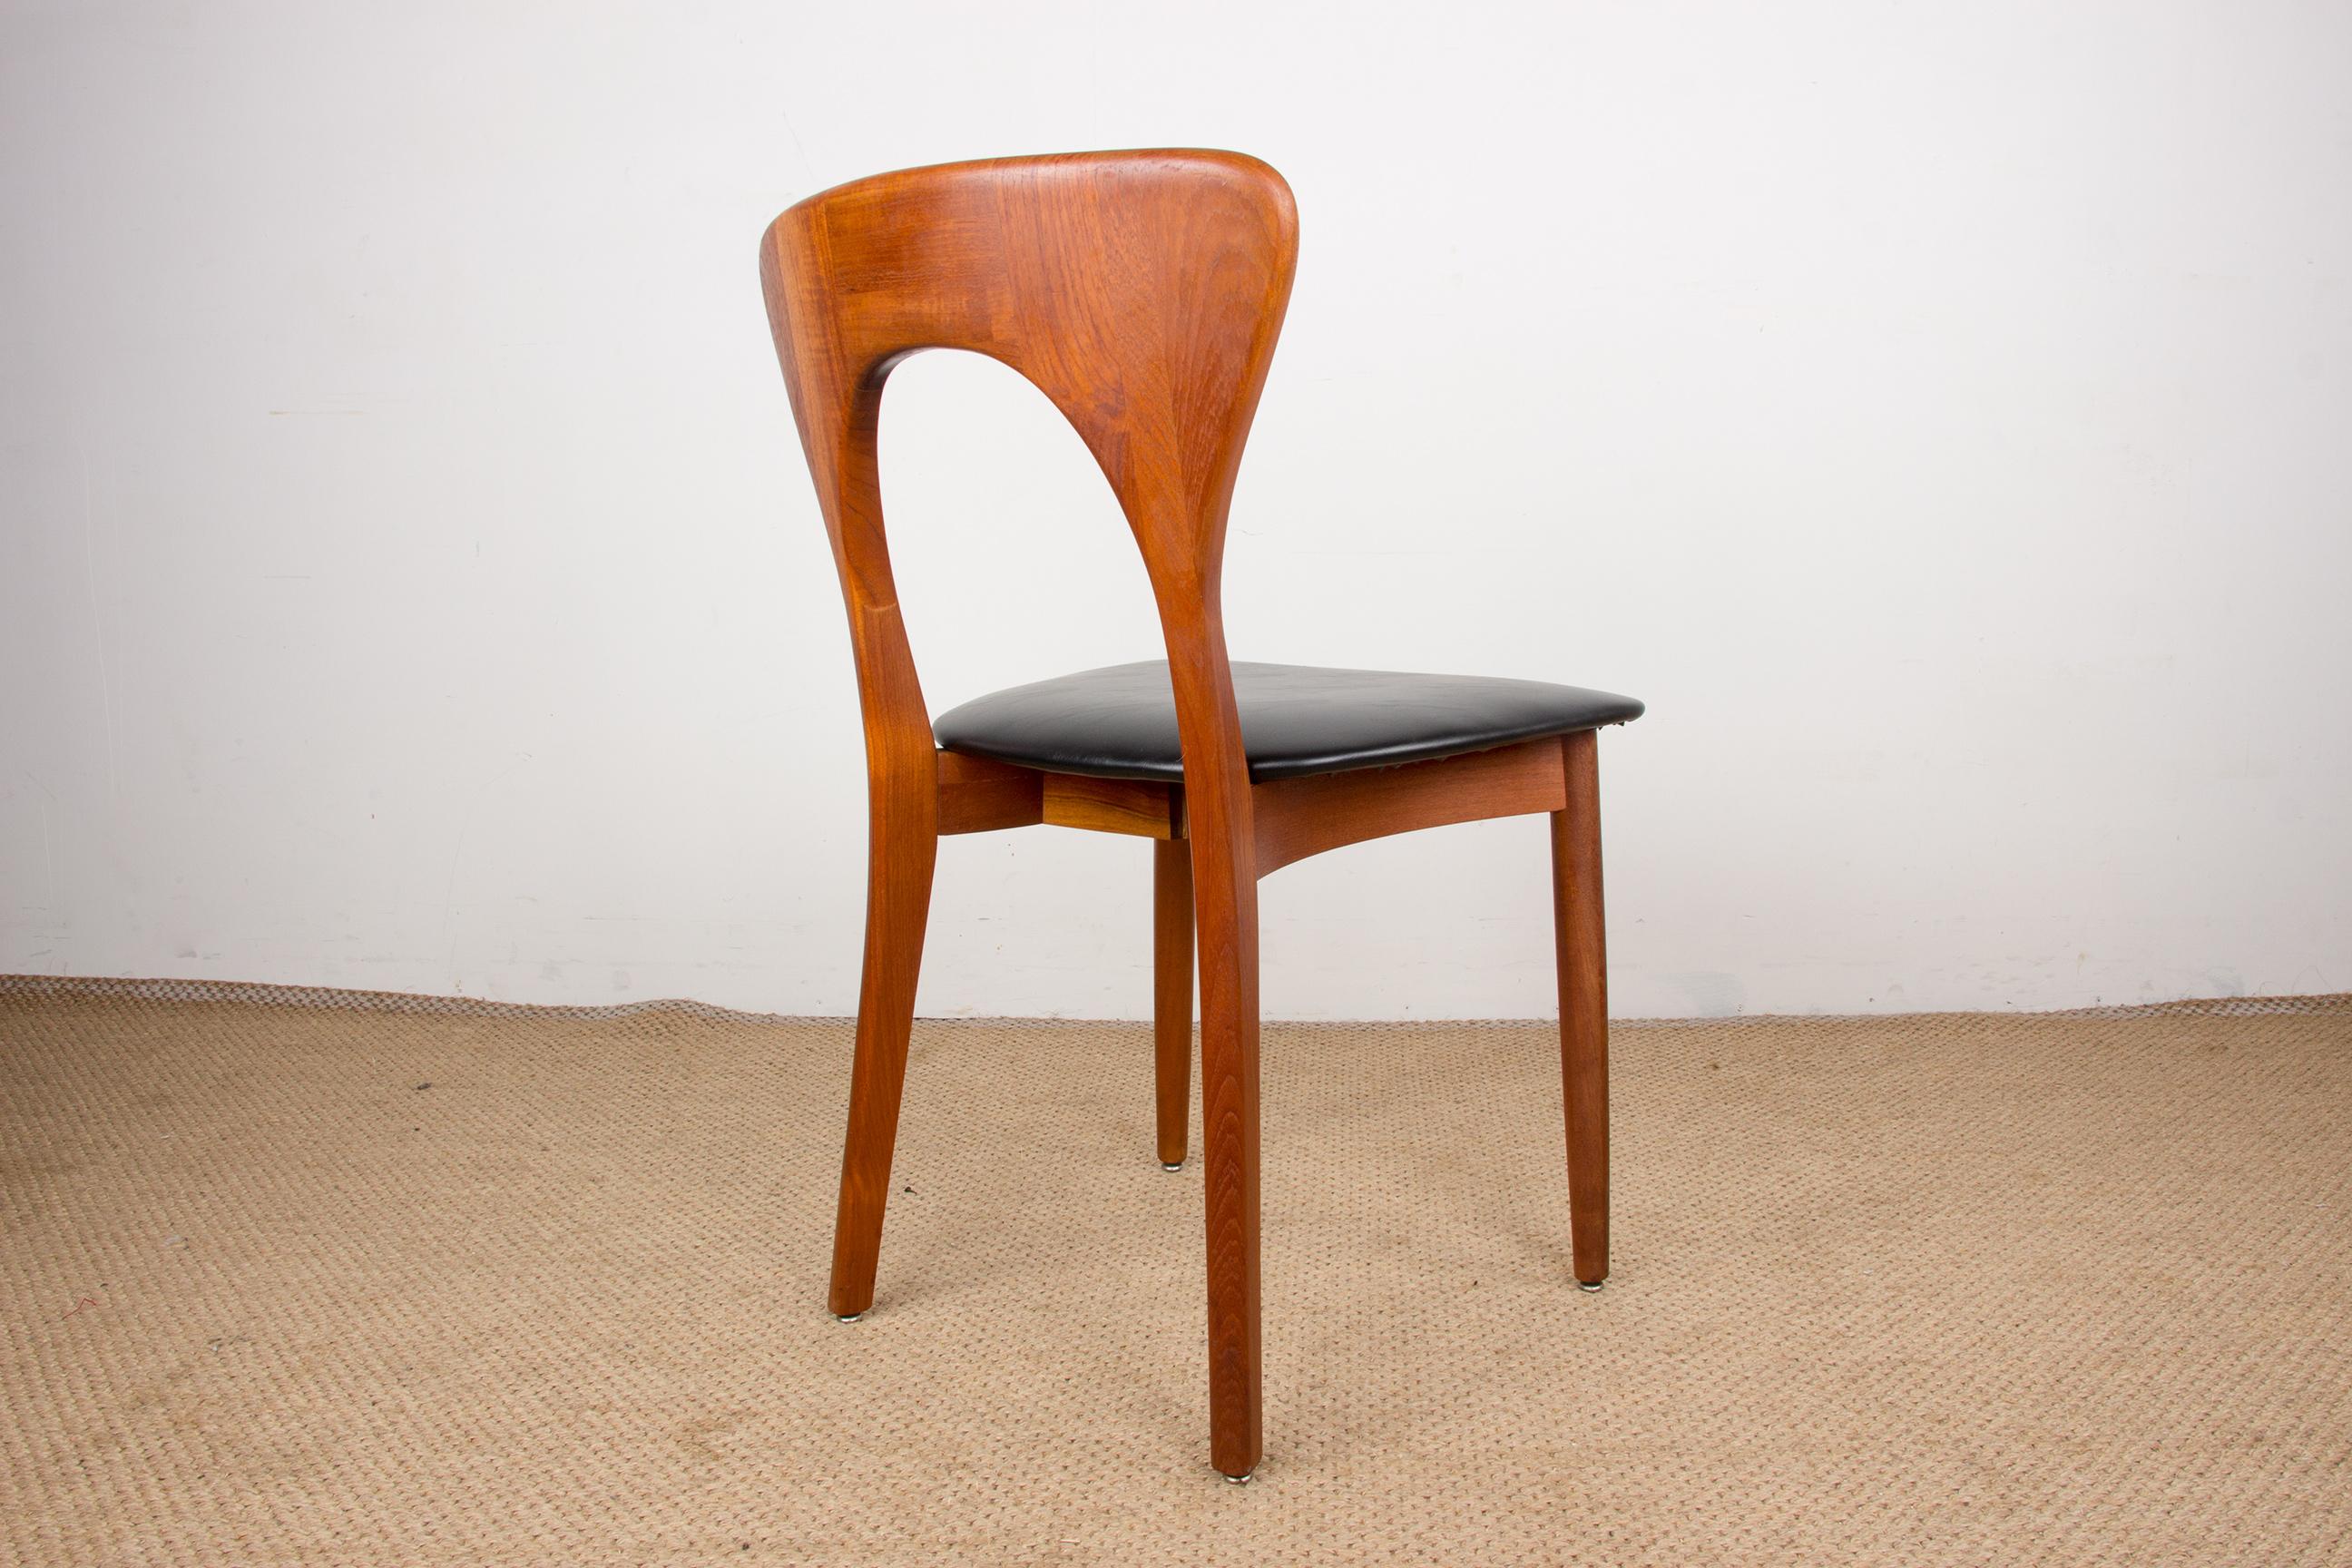 Series of 6 Danish chairs in Teak and skai, Peter model by Niels Koefoed 1960. 7